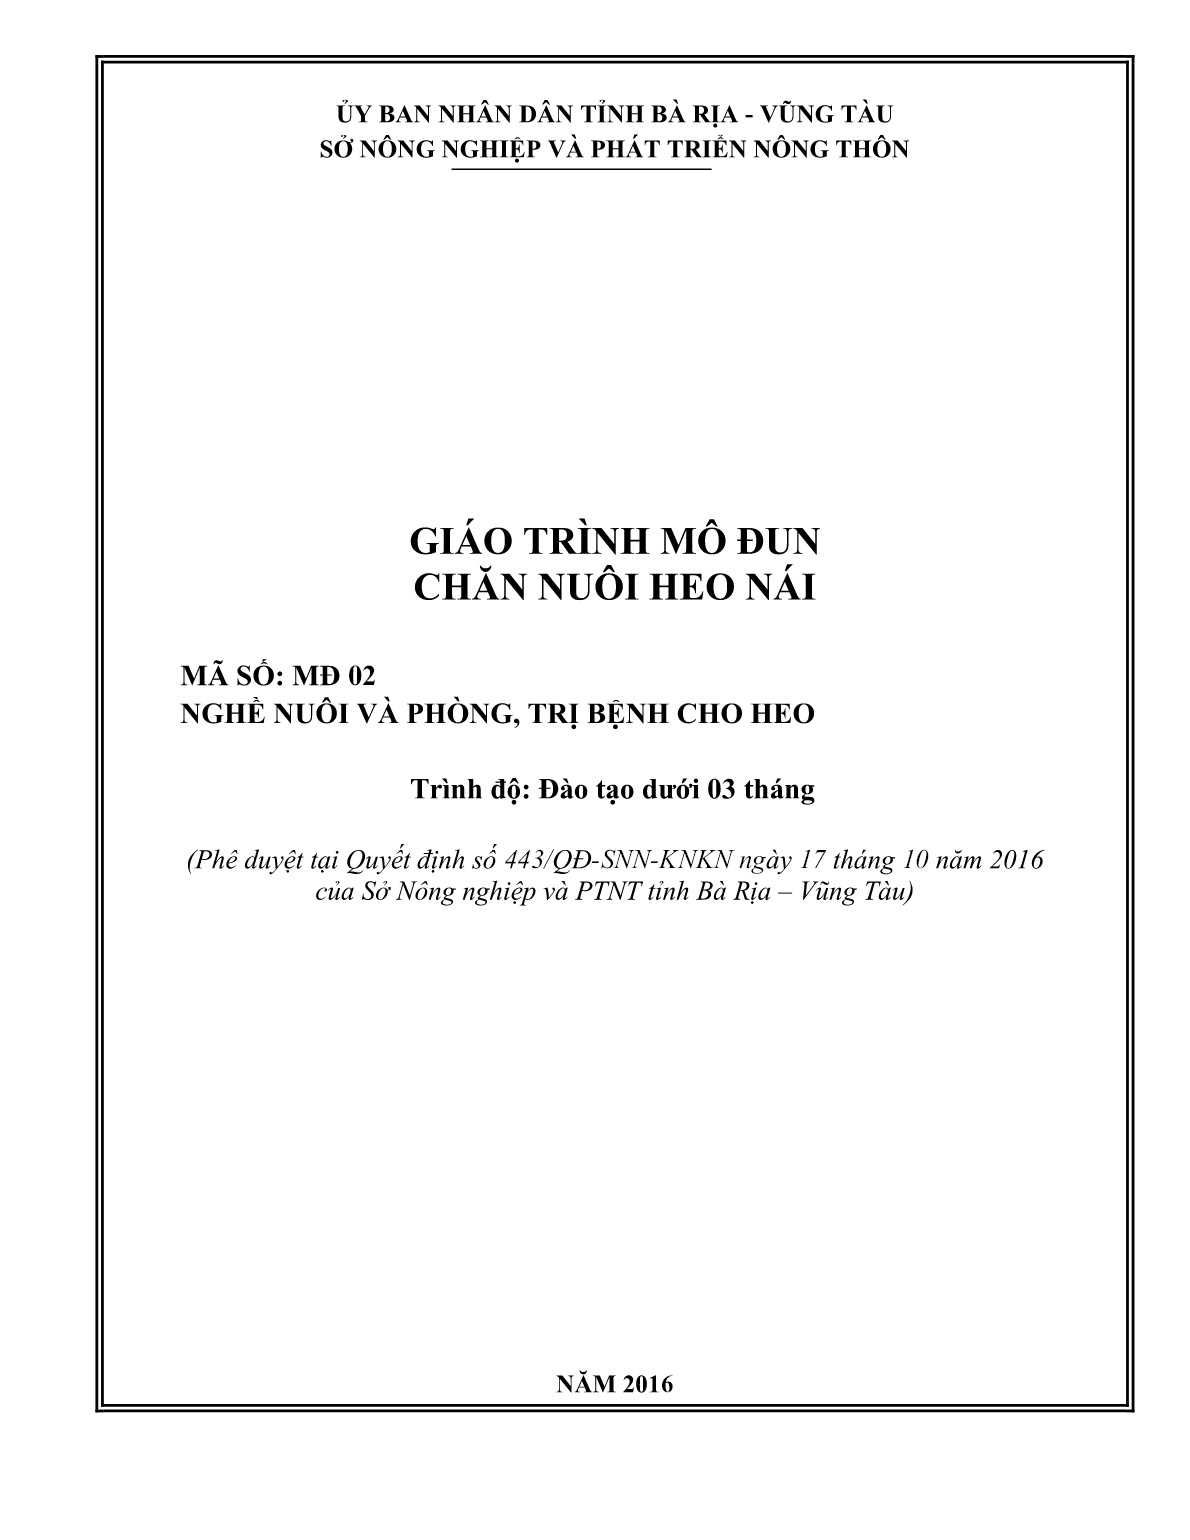 Giáo trình mô đun Chăn nuôi heo nái (Trình độ: Đào tạo dưới 3 tháng) trang 1